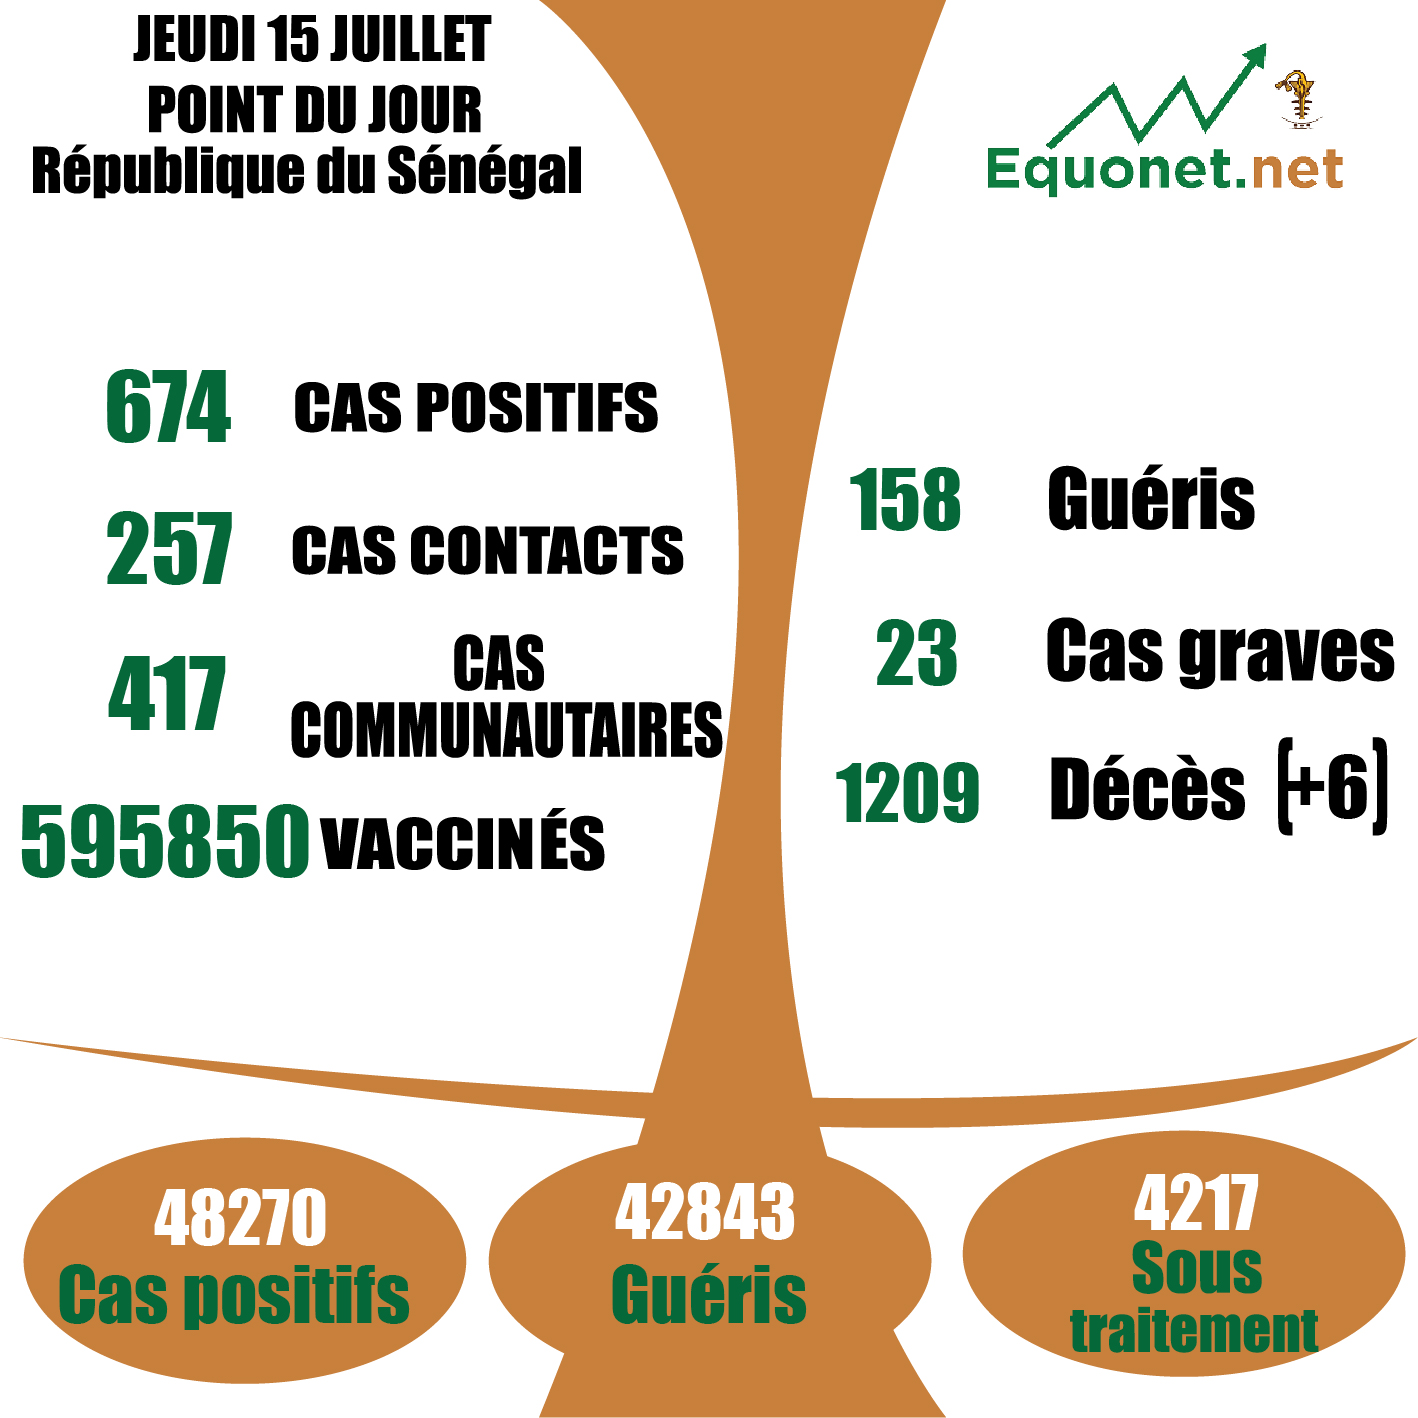 pandémie du coronavirus-covid-19 au Sénégal : 417 cas communautaires et 06 décès enregistrés ce jeudi 15 juillet 2021